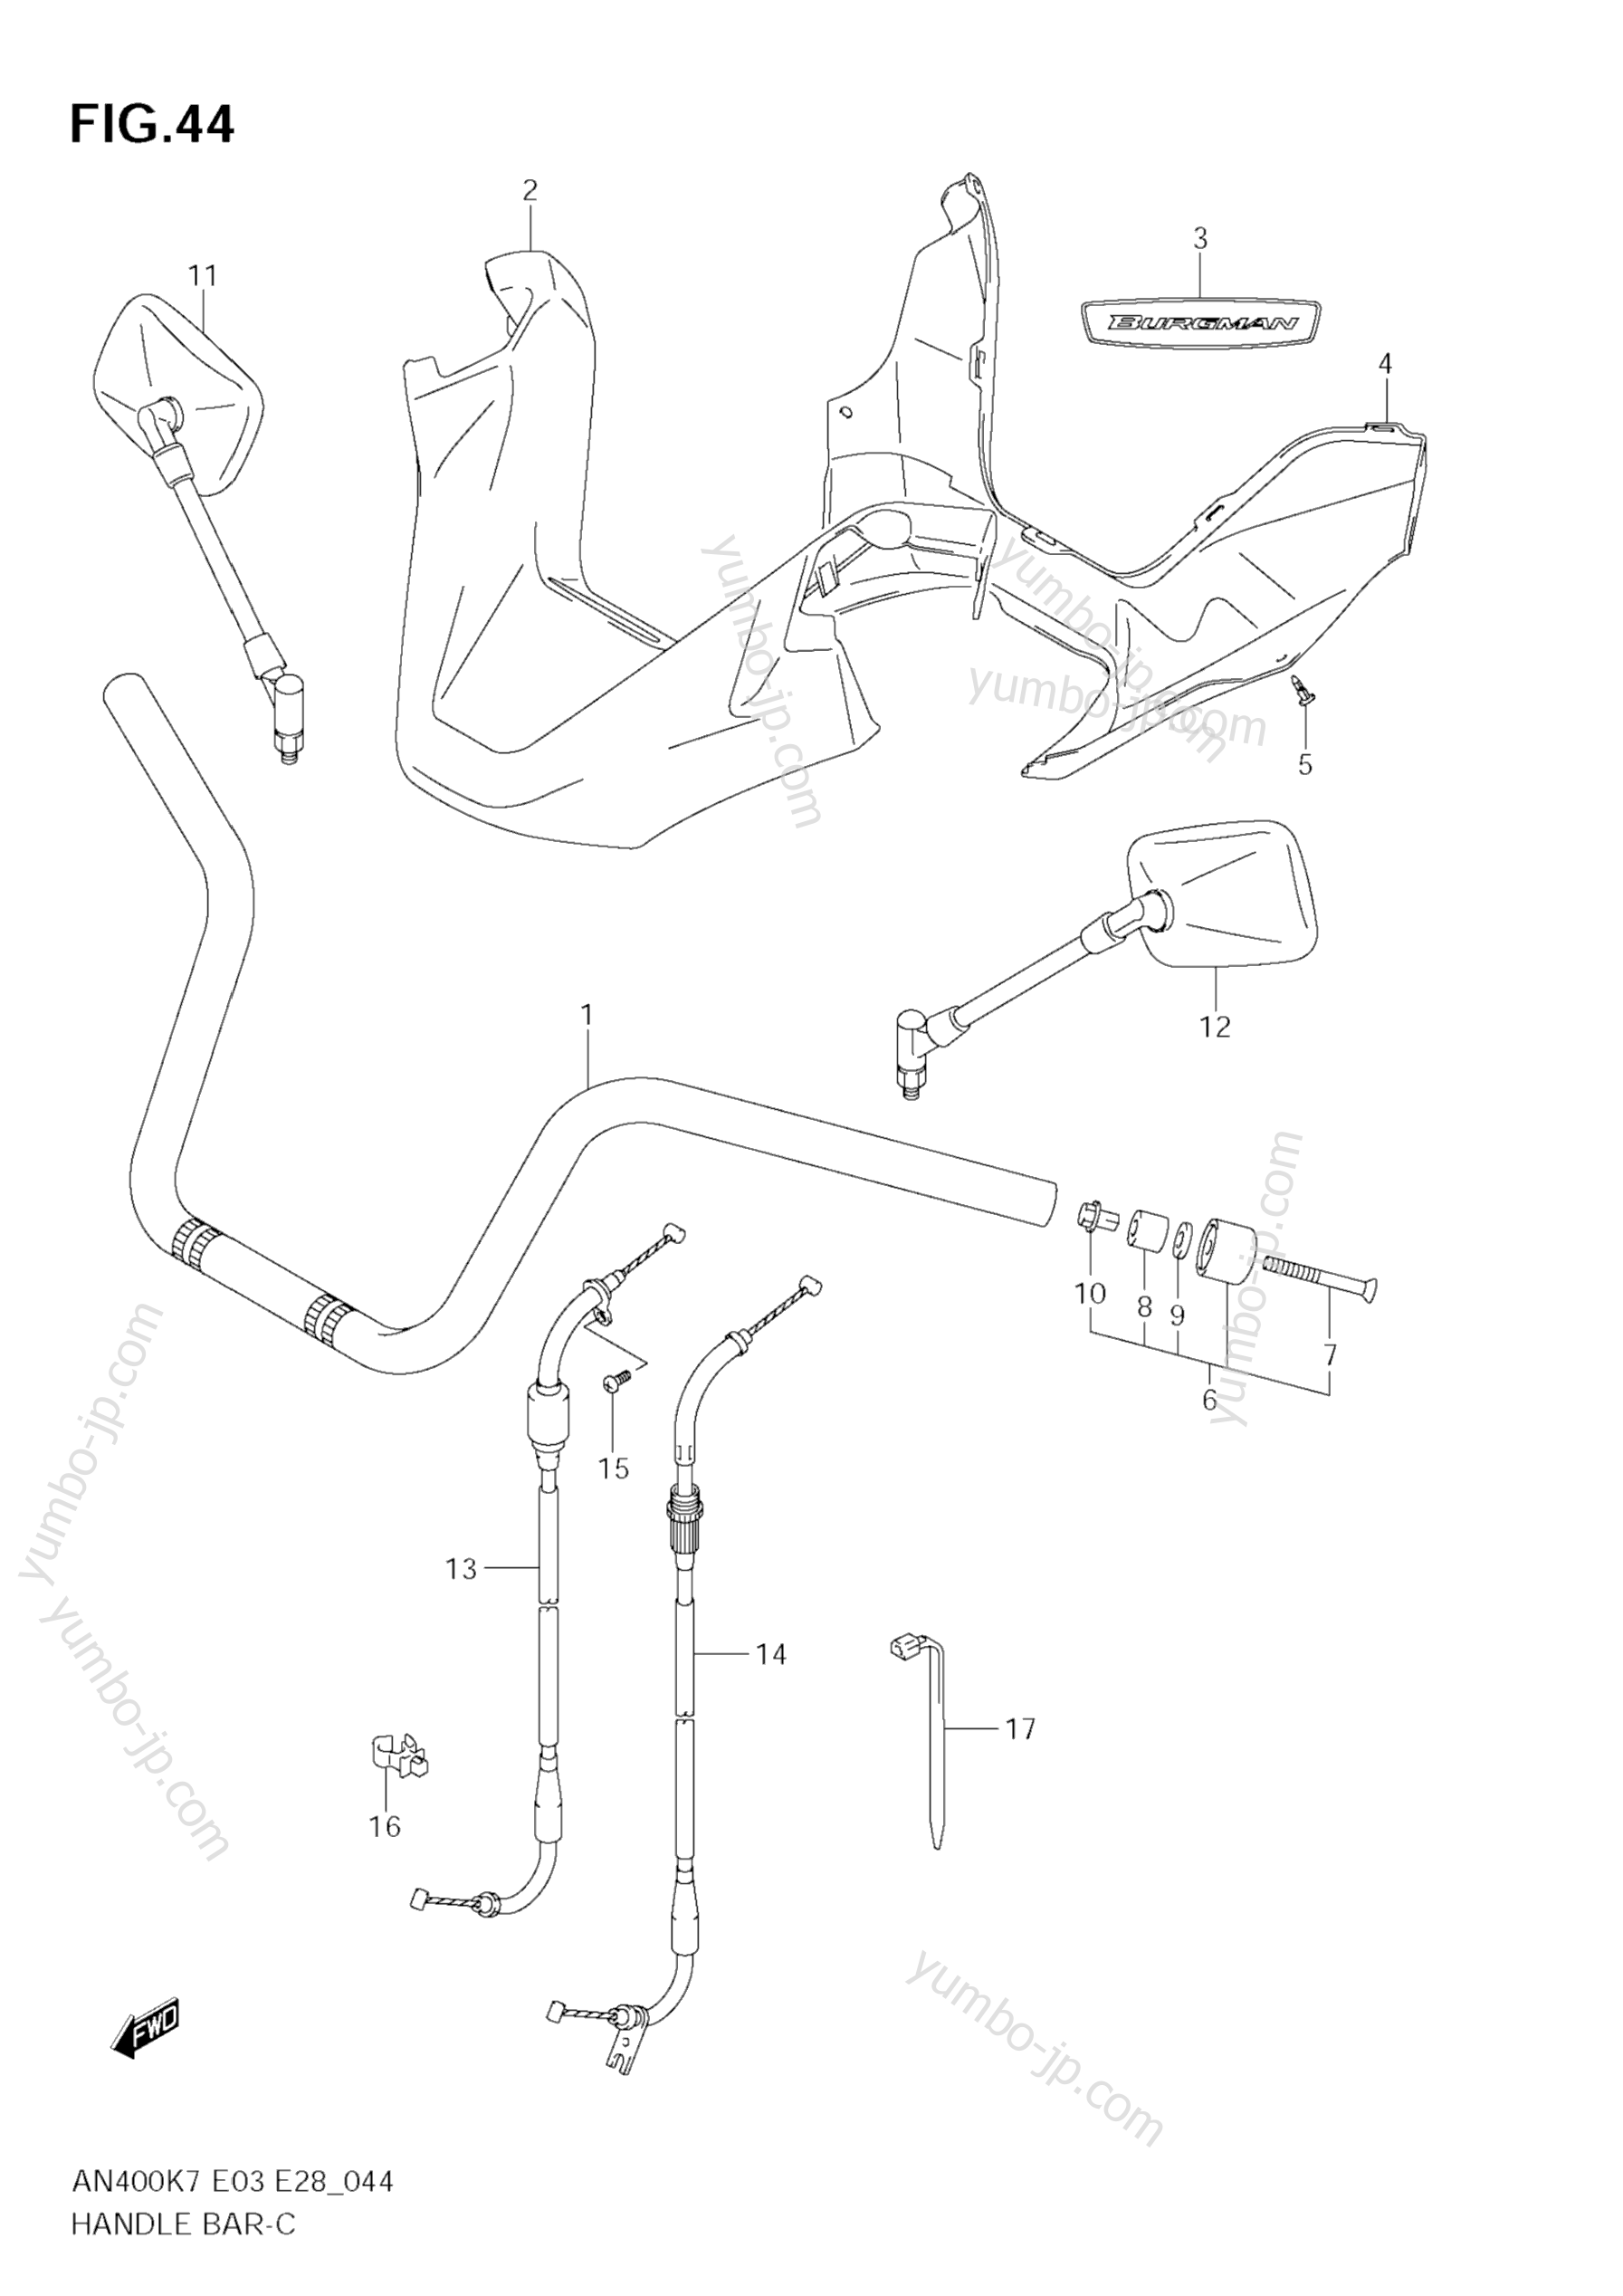 Румпель (рукоятка управления) для скутеров SUZUKI Burgman (AN400) 2009 г.